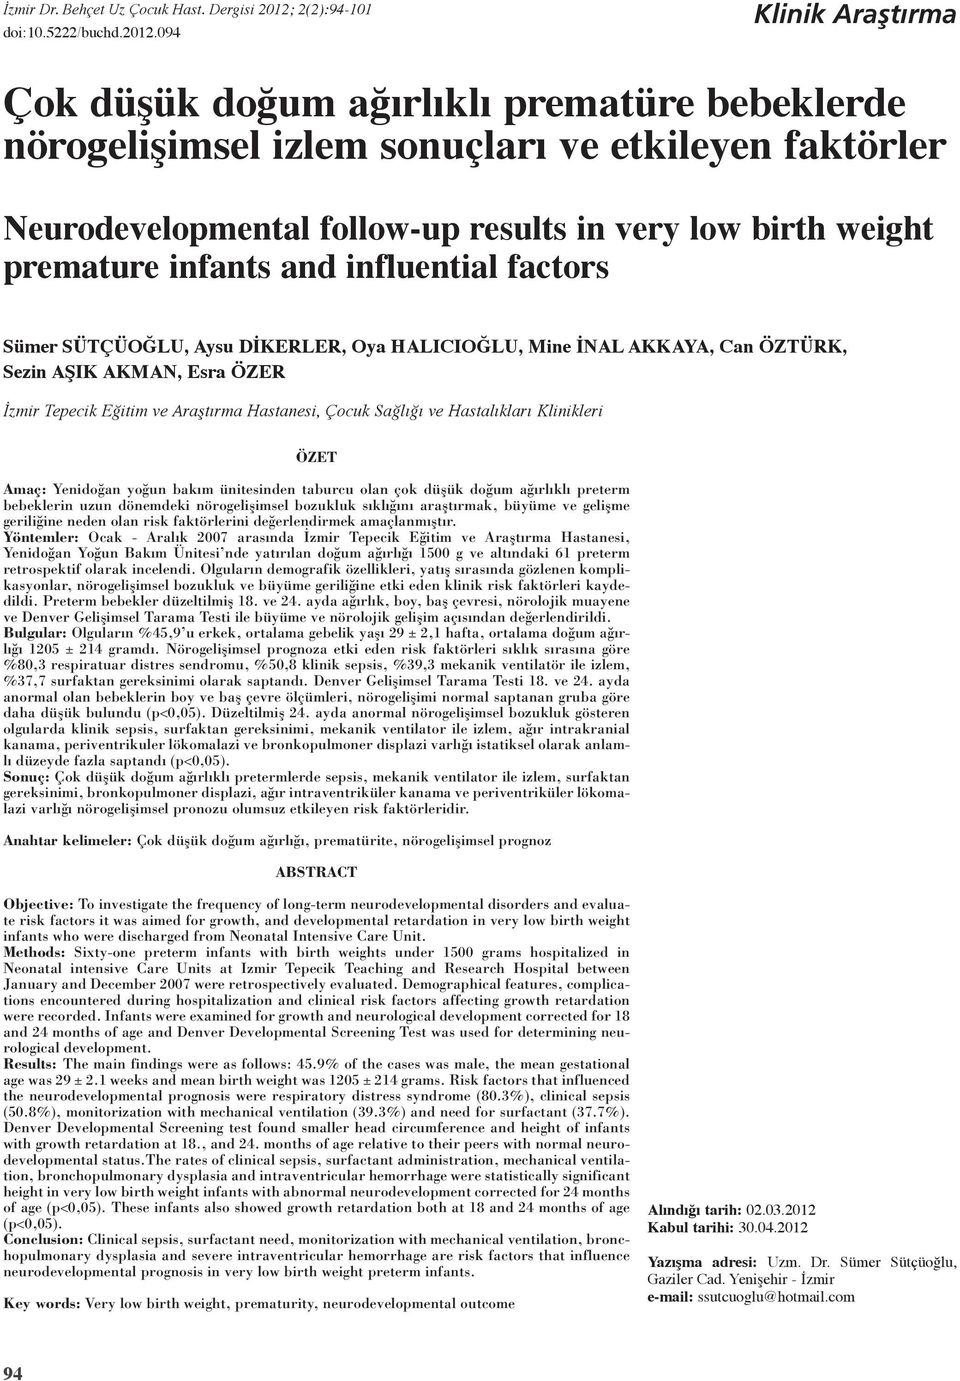 09 Klinik Araştırma Çok düşük doğum ağırlıklı prematüre bebeklerde nörogelişimsel izlem sonuçları ve etkileyen faktörler Neurodevelopmental follow-up results in very low birth weight premature